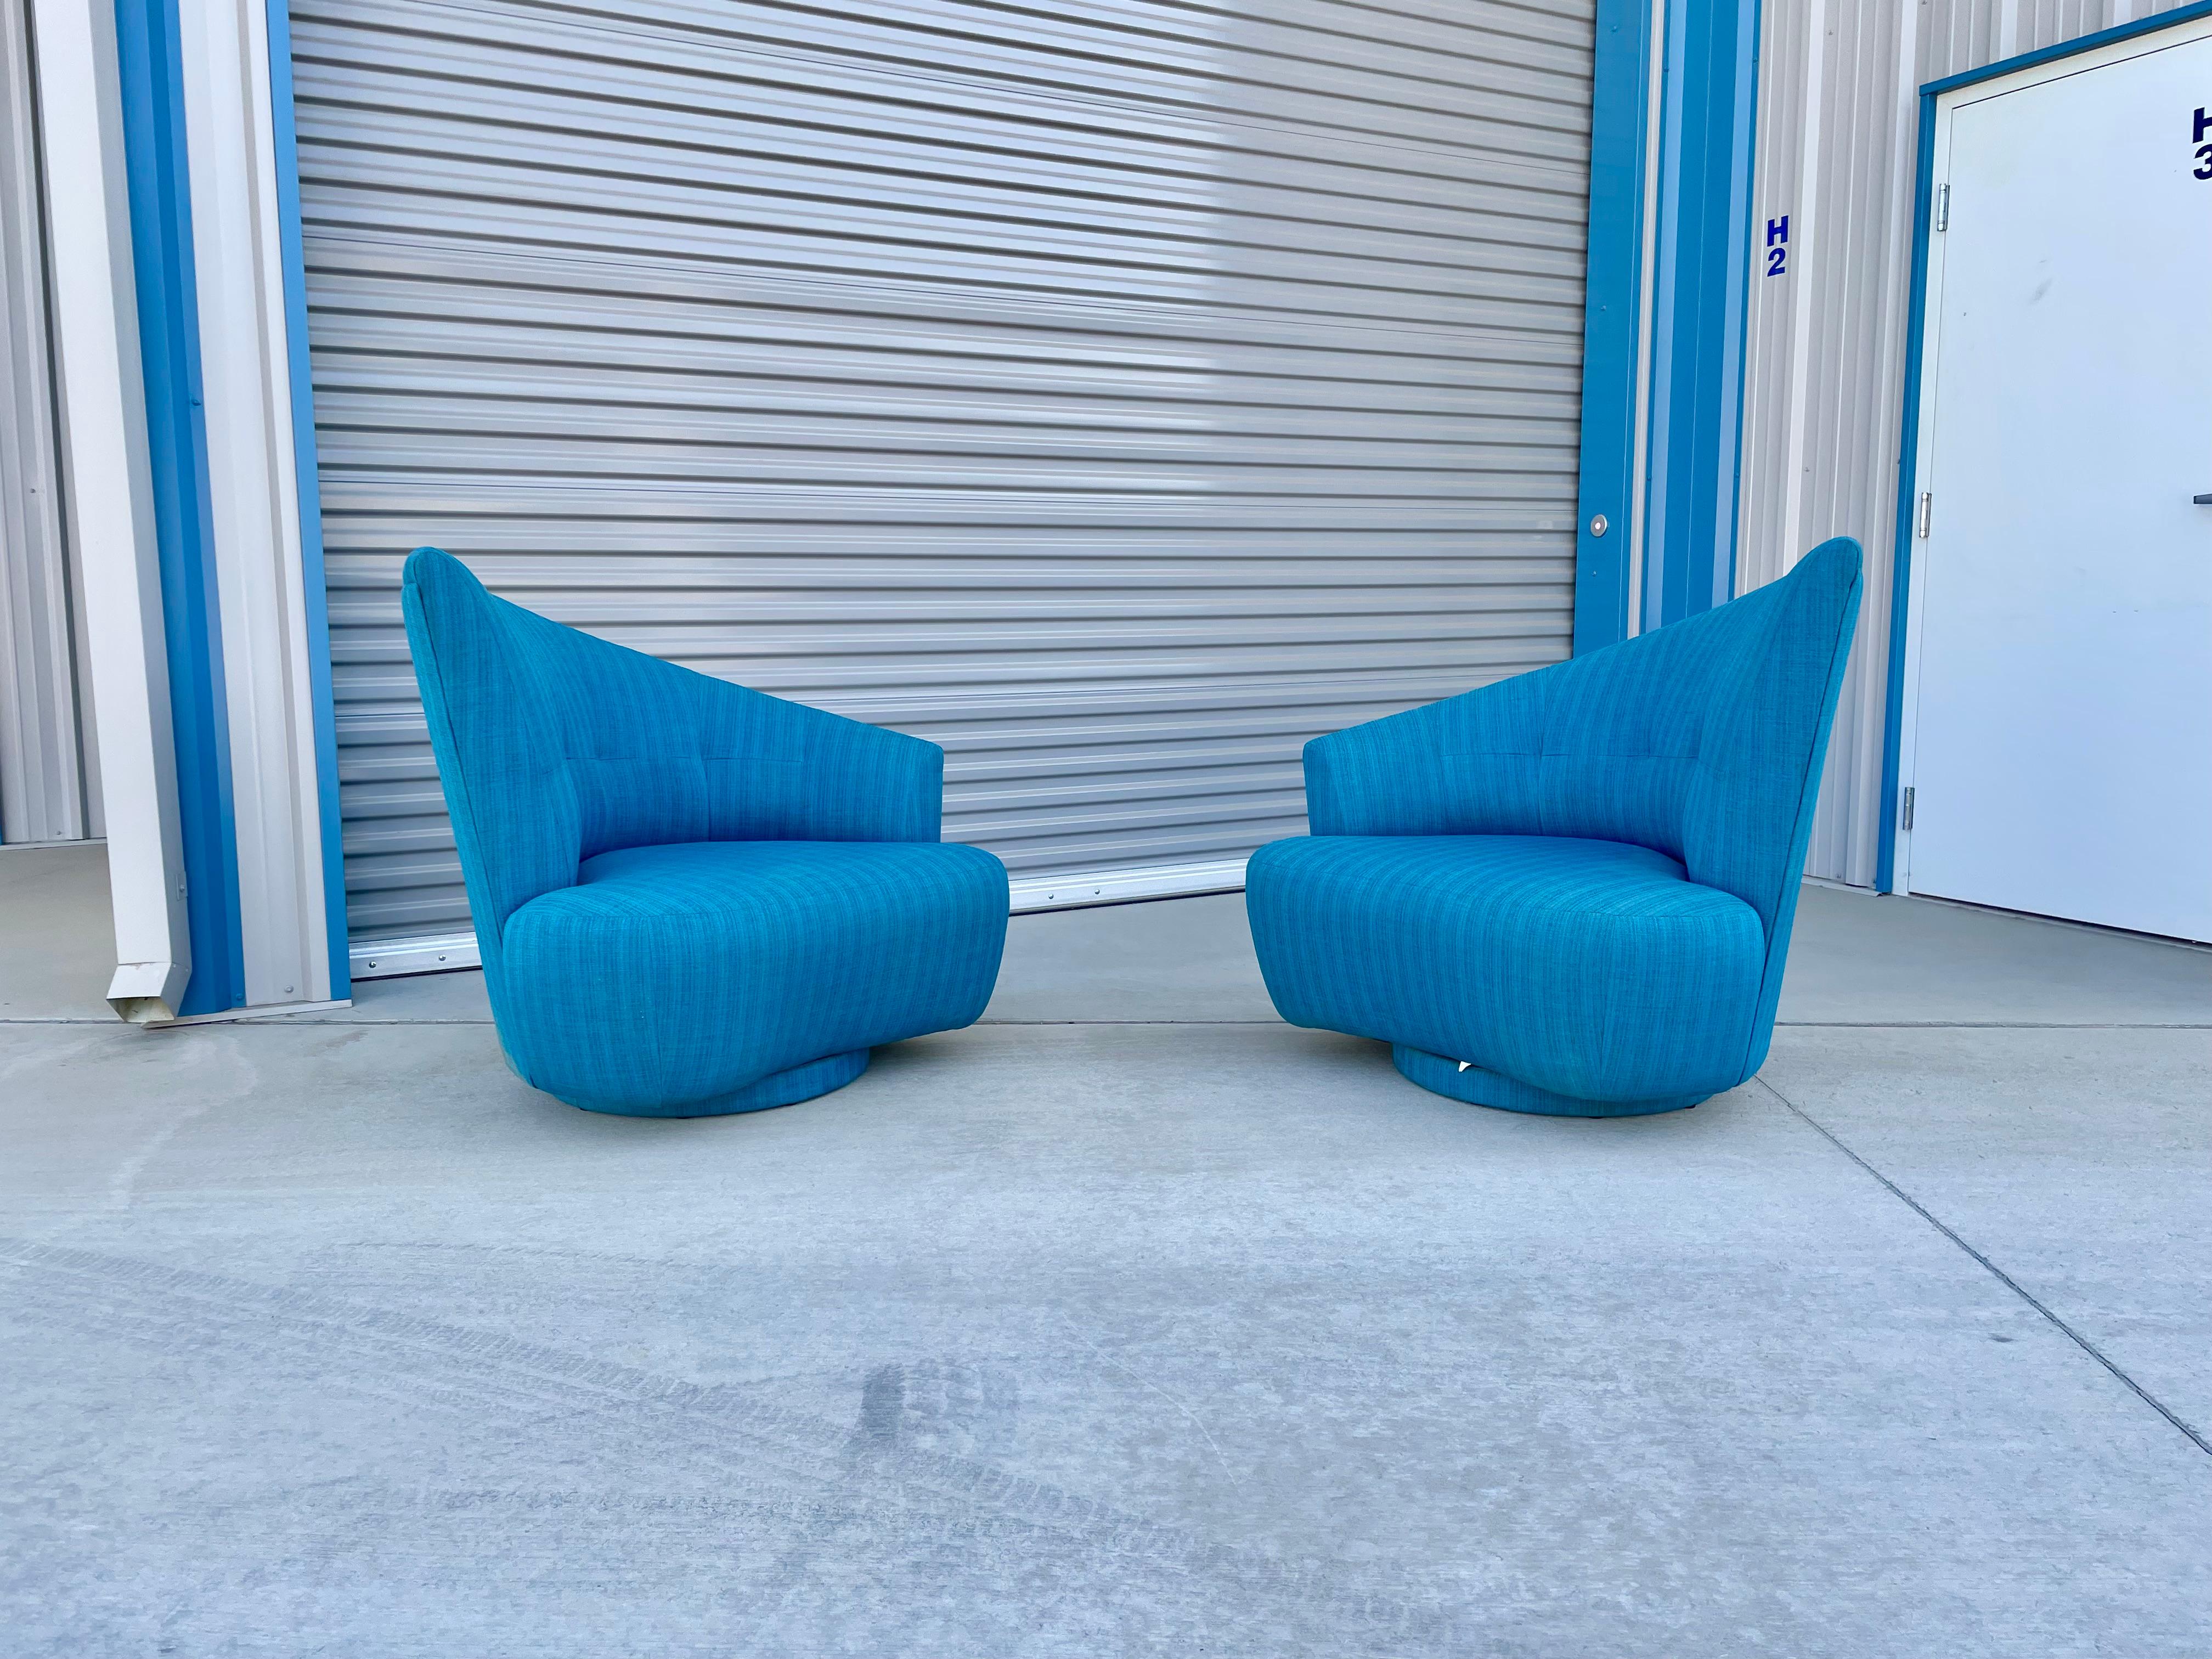 Magnifique paire de fauteuils pivotants asymétriques Hollywood regency fabriqués et conçus aux États-Unis, vers les années 1950. Cette paire de chaises longues est dotée d'un dossier incurvé unique, qui offre un soutien et un confort solides à votre